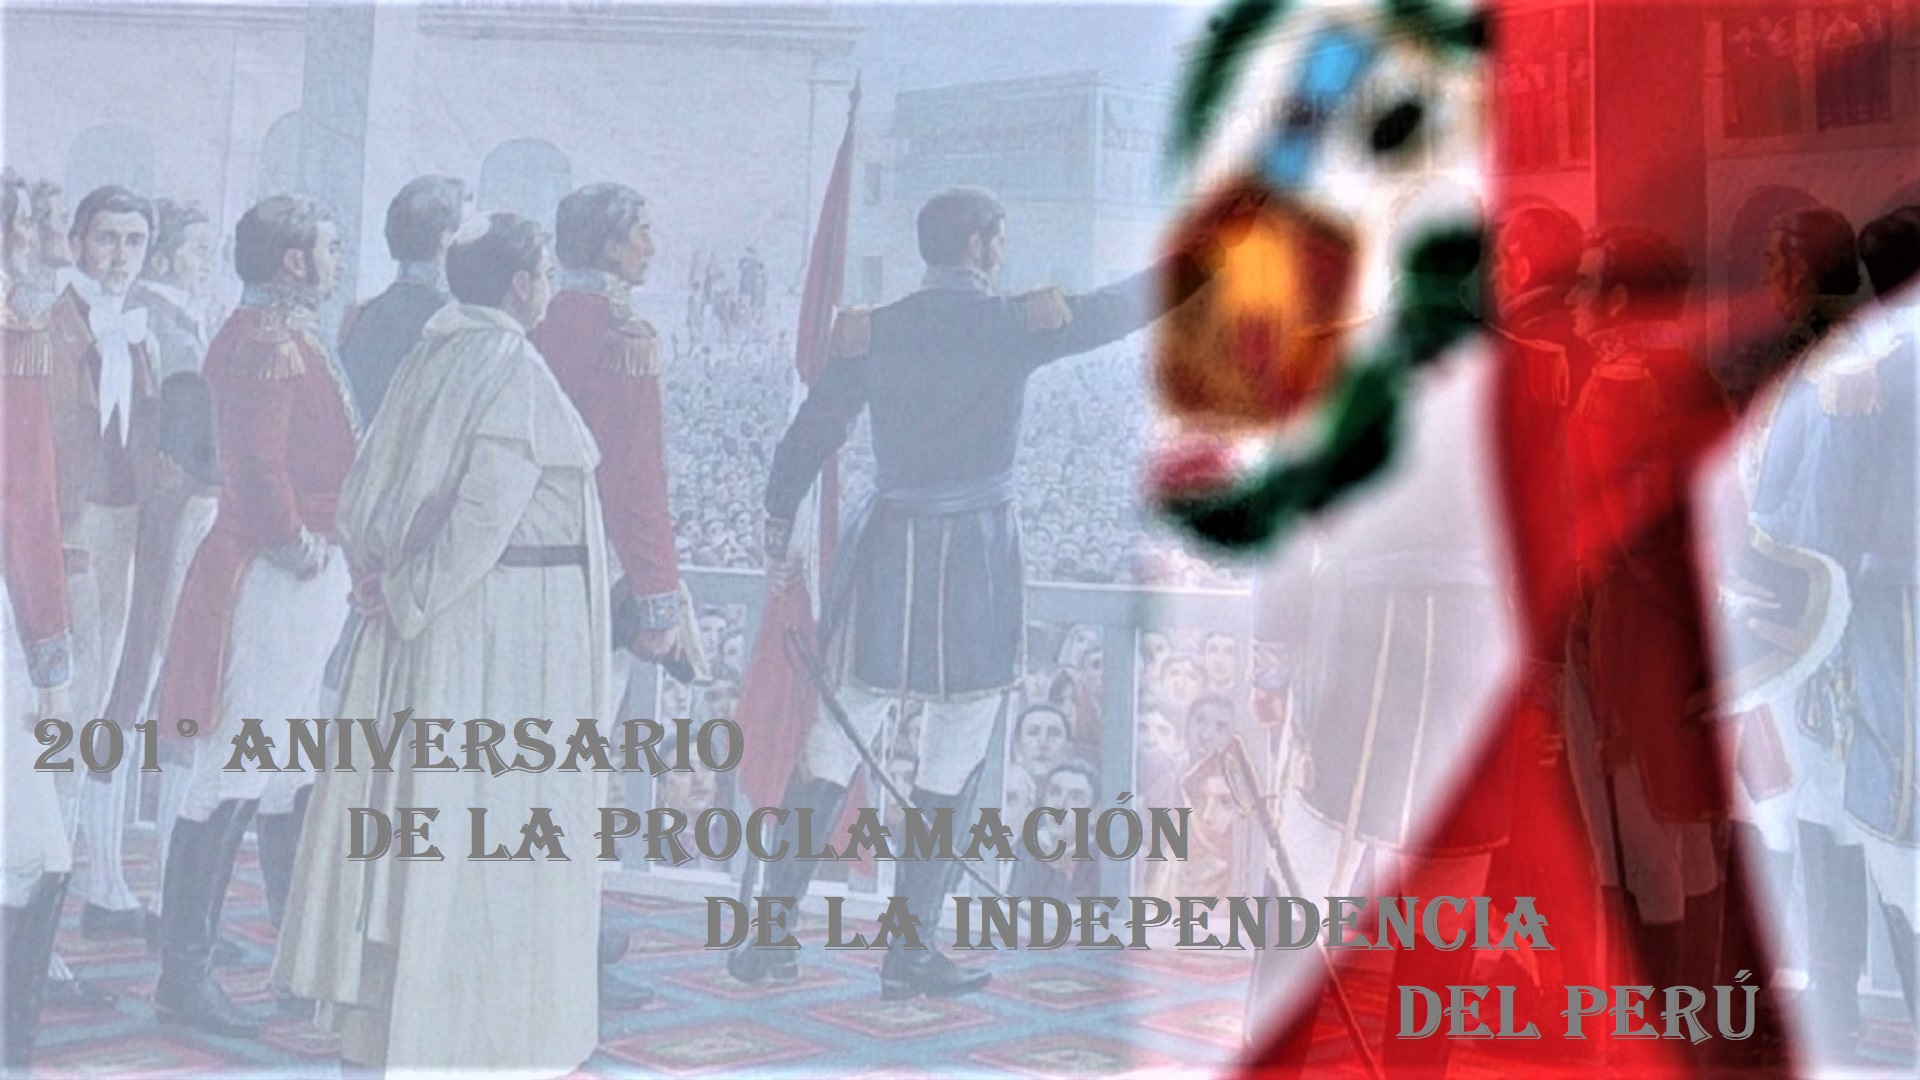 La nación Inca, "Perú" cumple hoy 201° aniversario de la proclamación de su independencia.